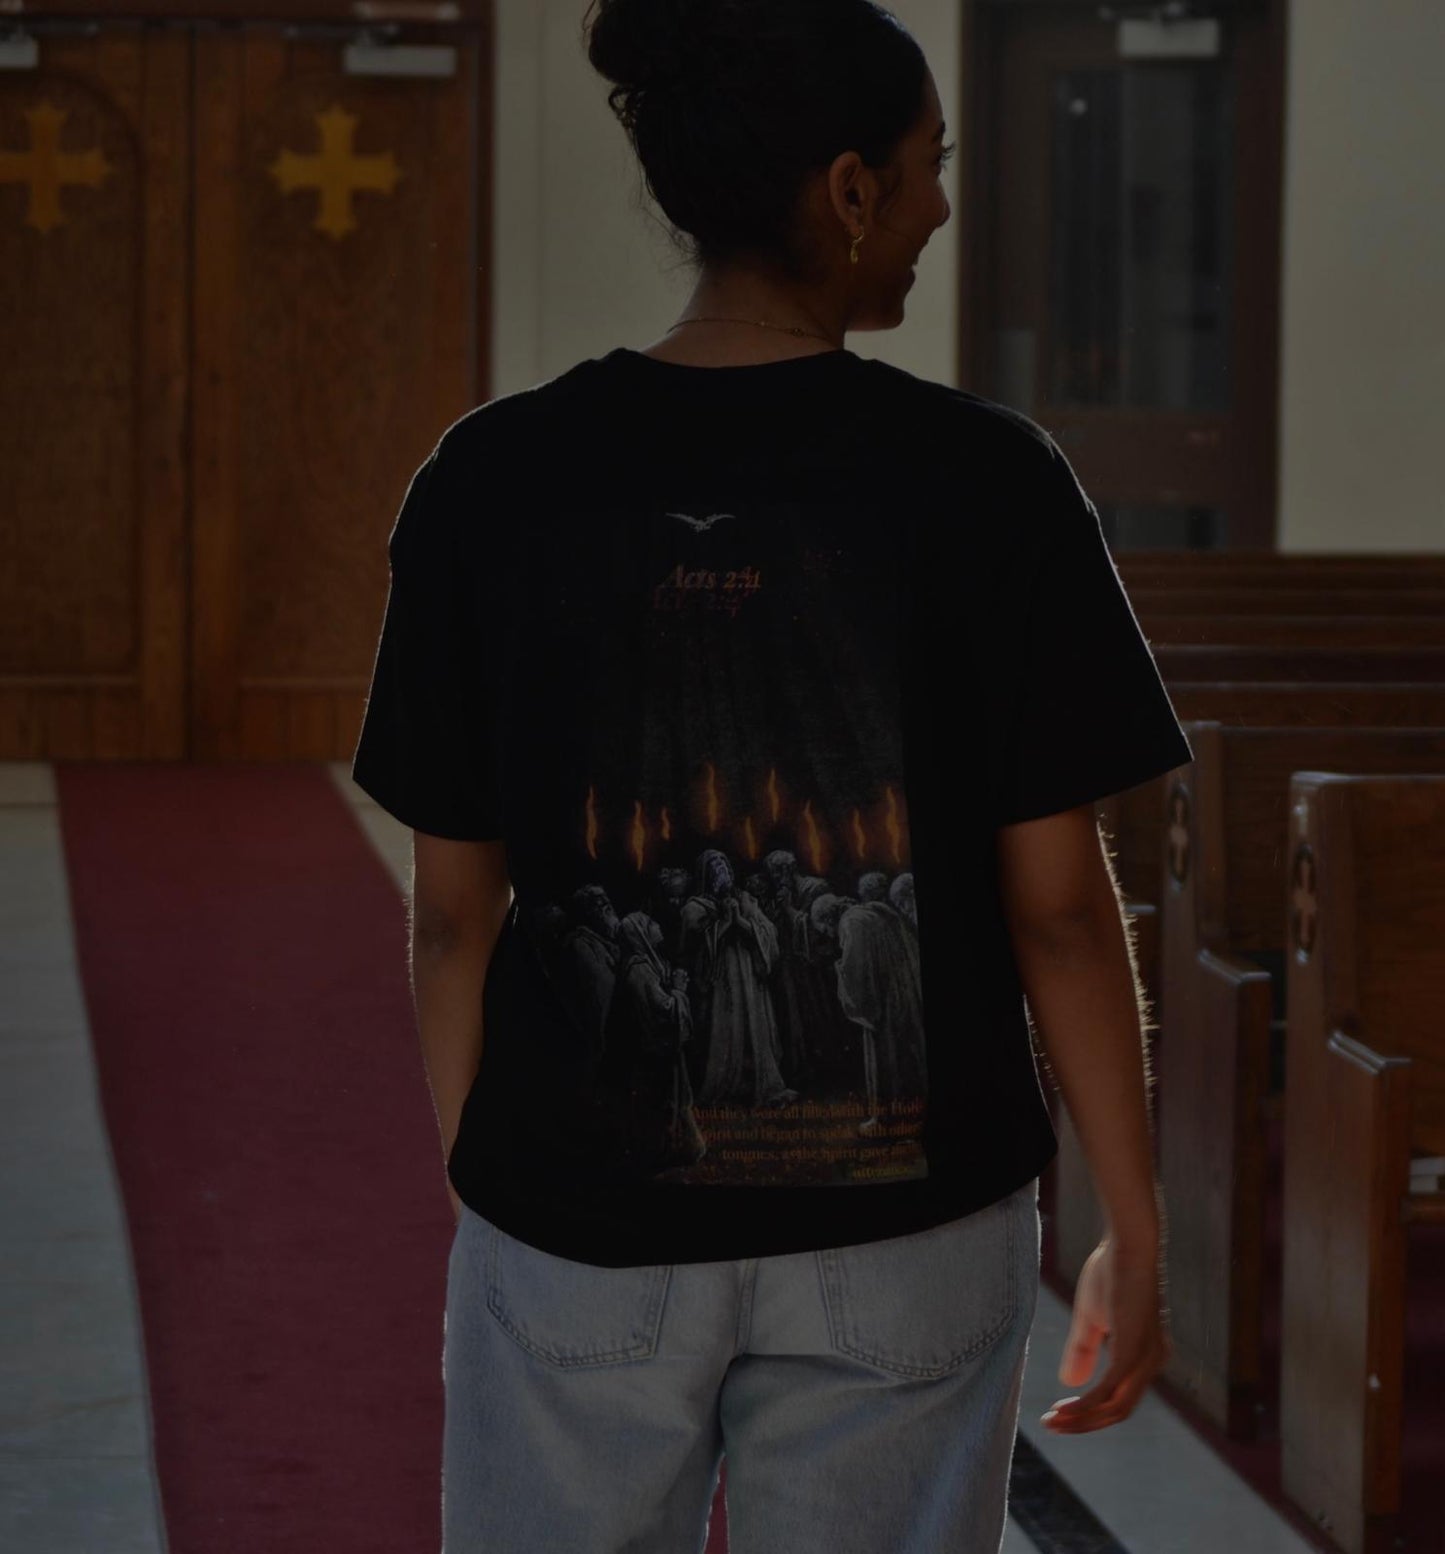 Pentecost T-Shirt